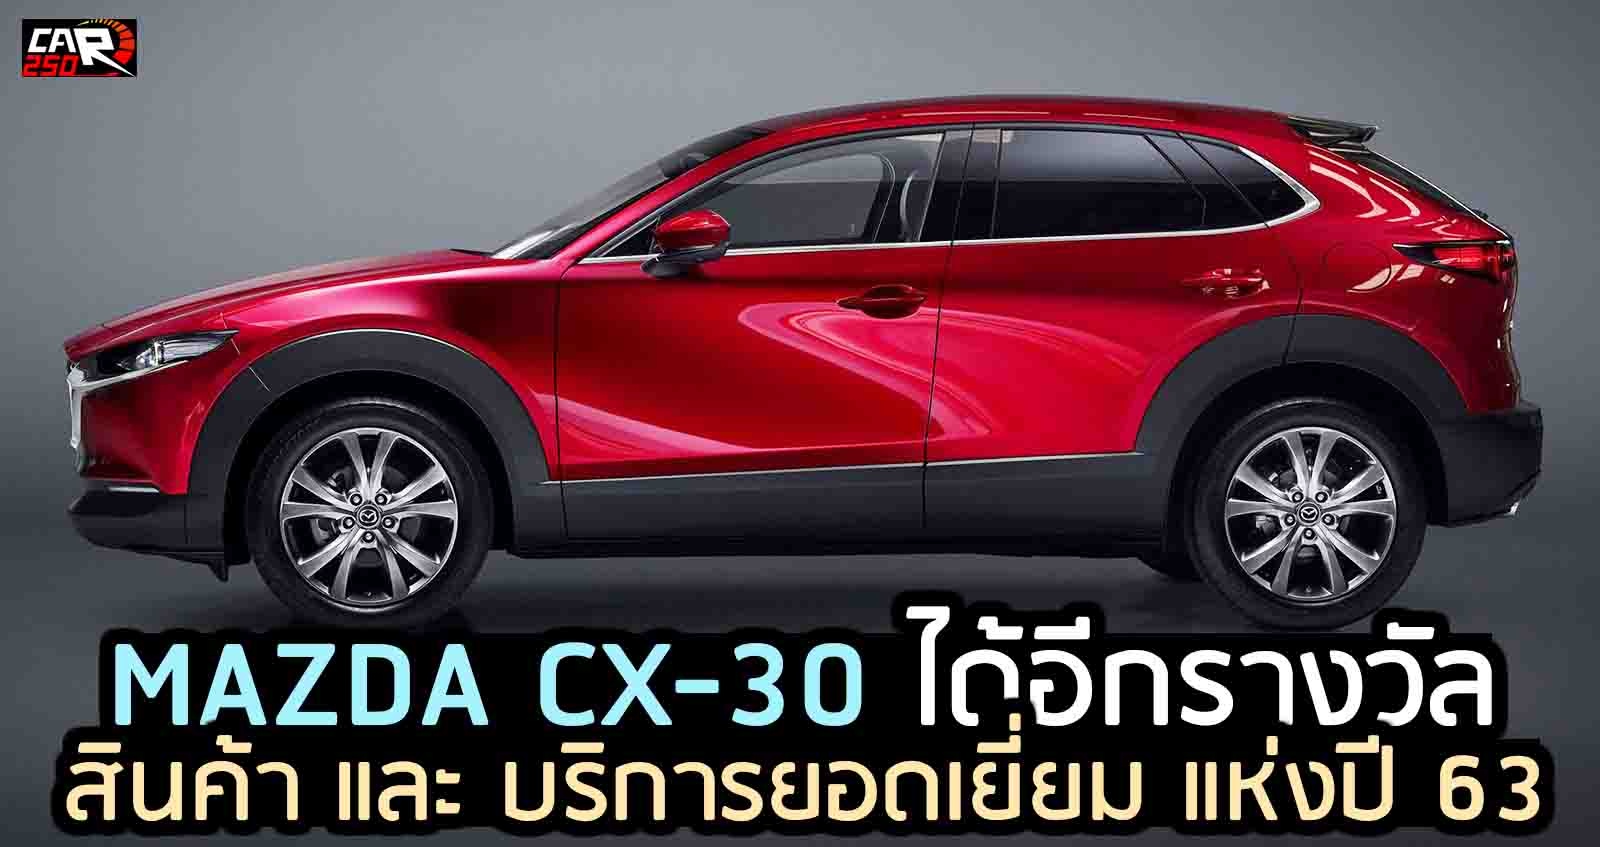 สินค้า และ บริการยอดเยี่ยม แห่งปี 63 Mazda CX-30 (Product of the Year Awards 2020)